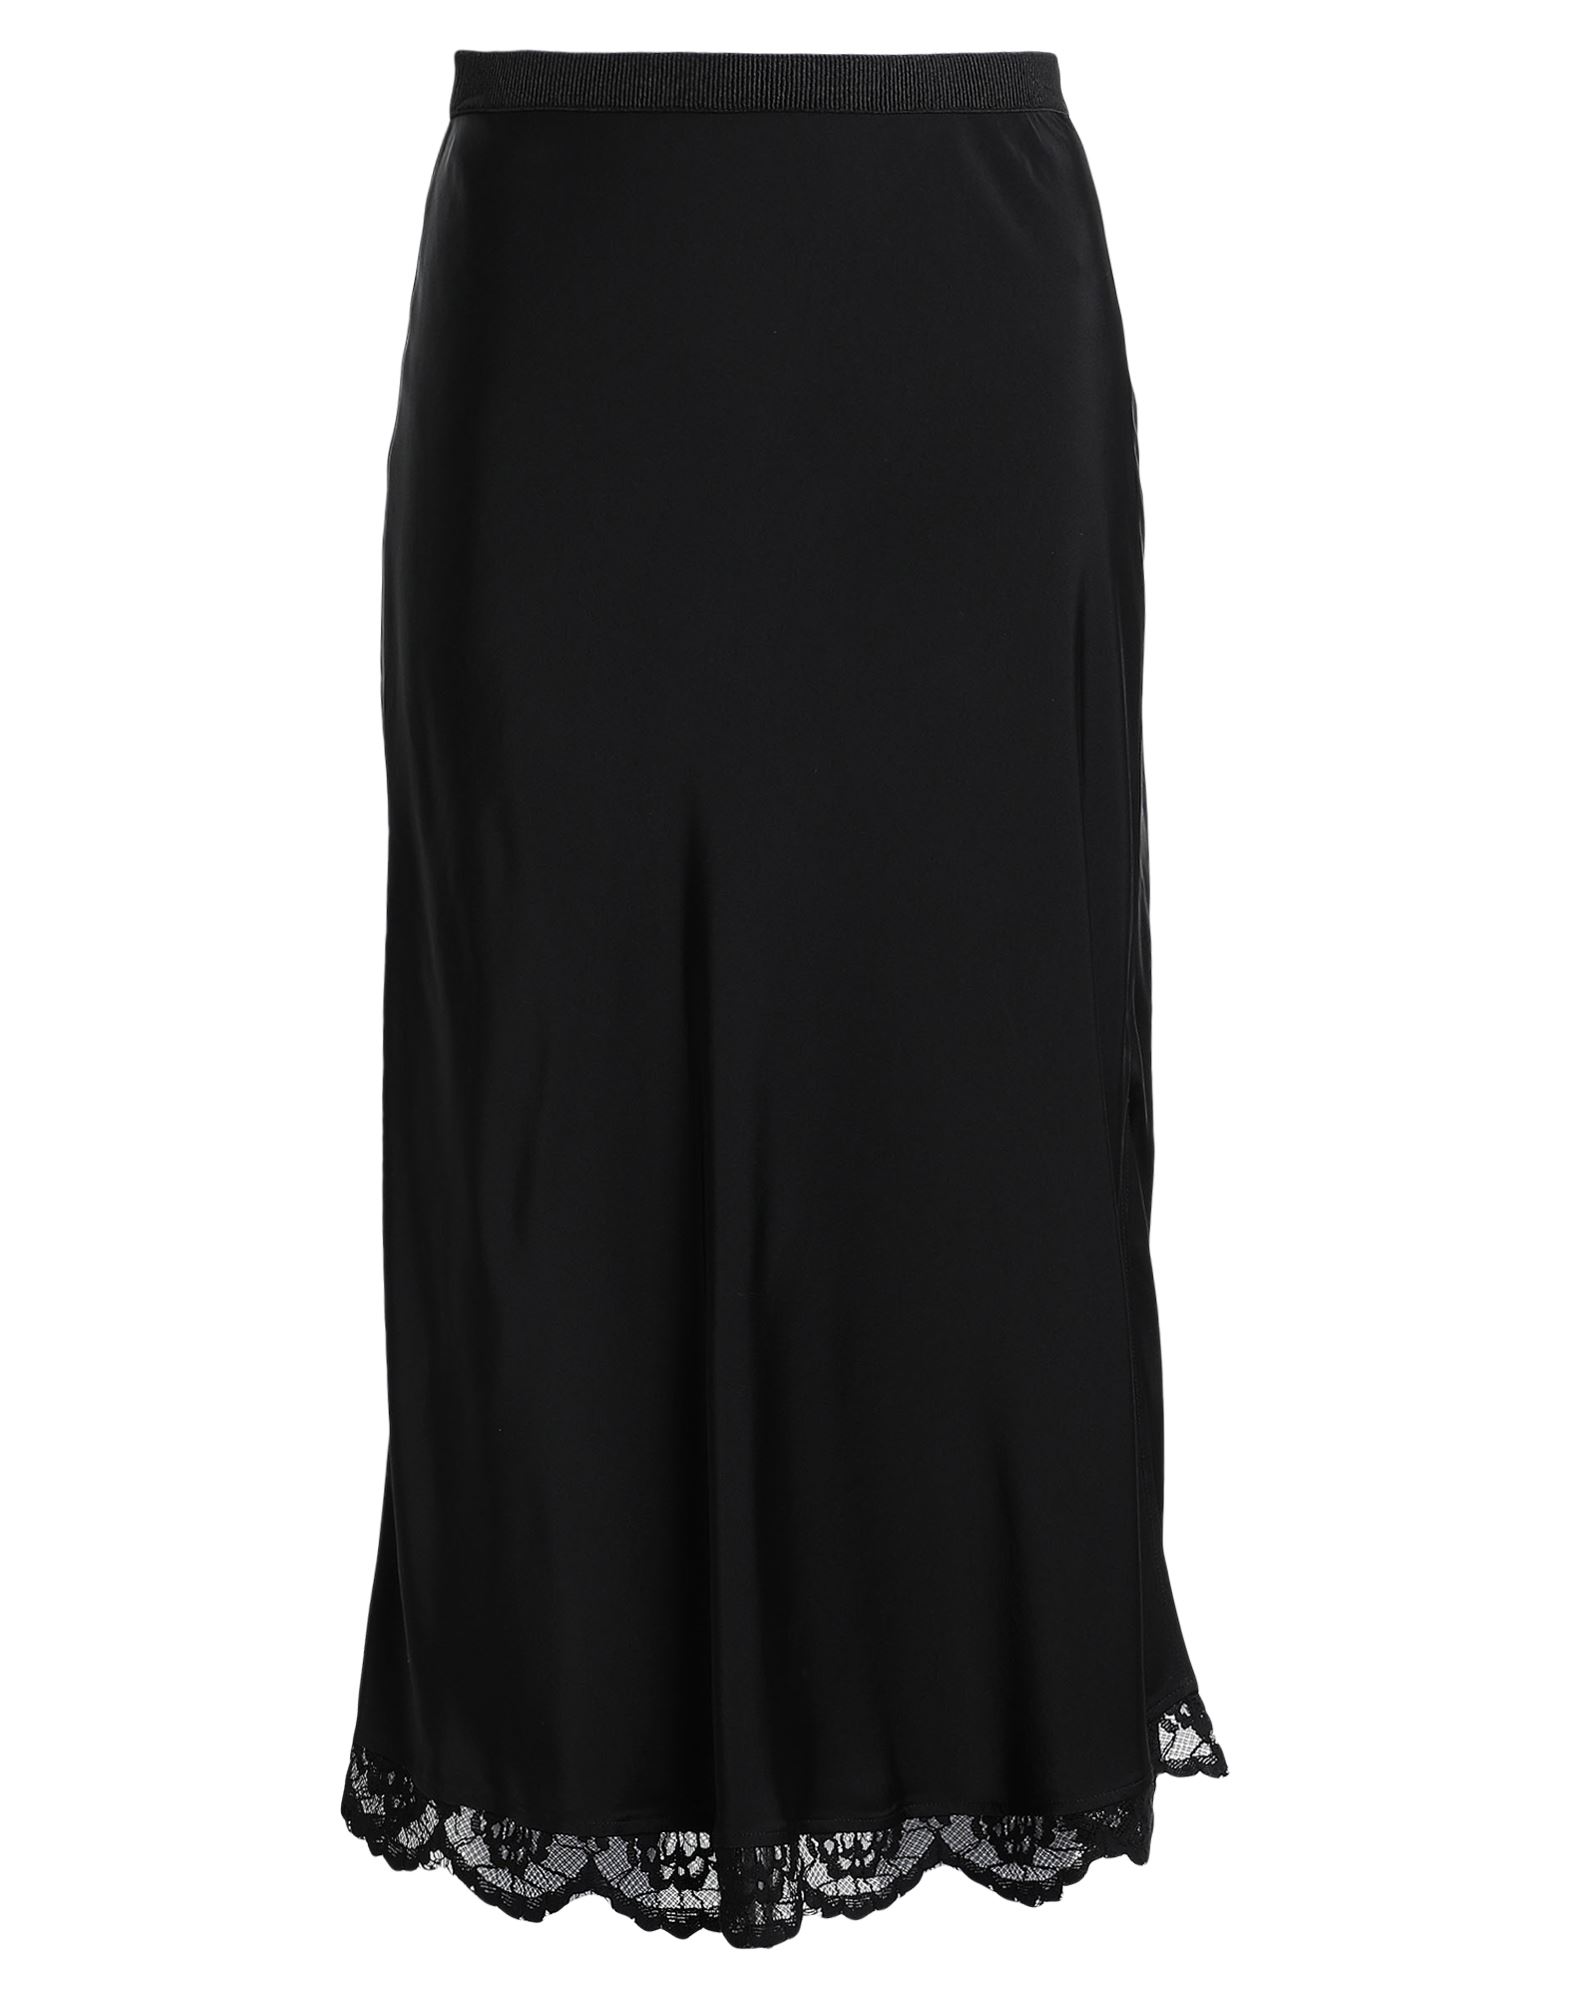 Arket Midi Skirts In Black